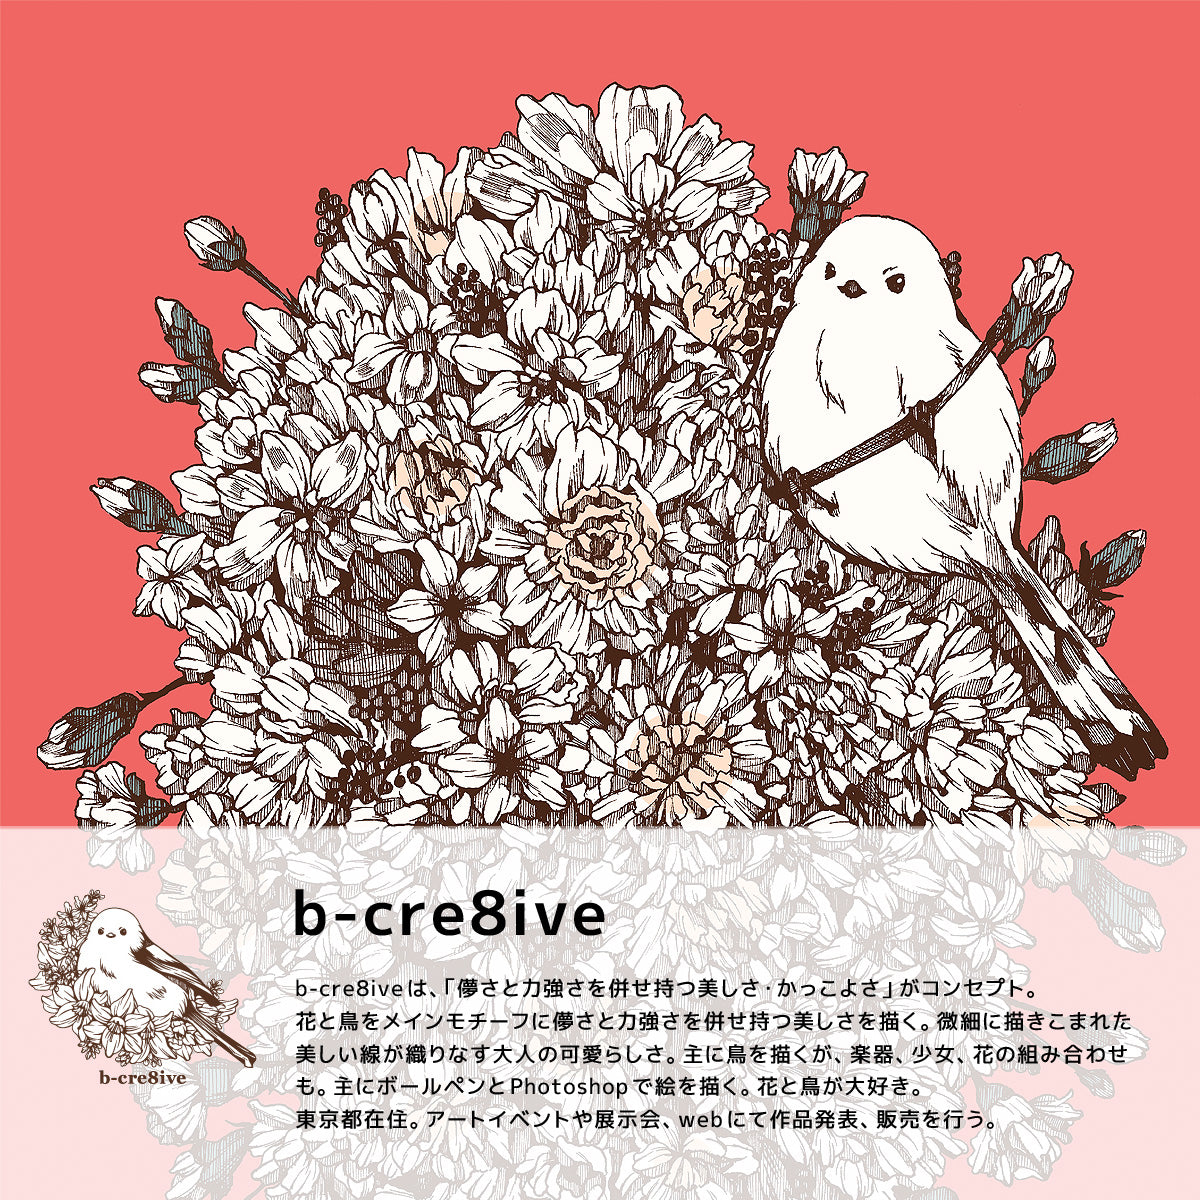 b-cre8tiveは、儚さと力強さを併せ持つ美しさ・かっこよさがコンセプトのブランドです。